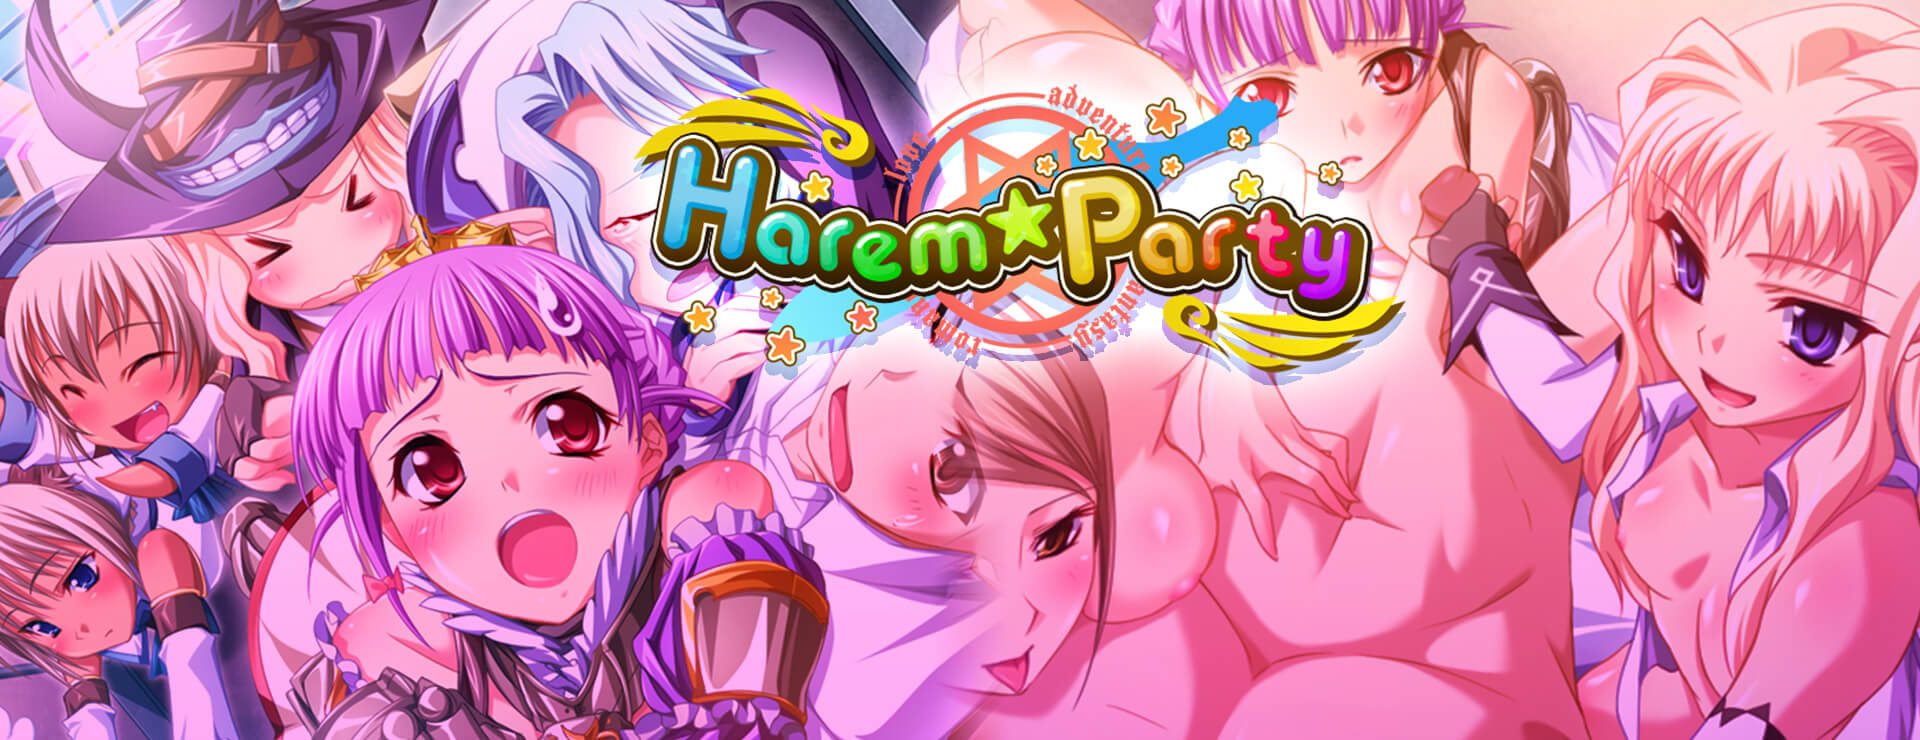 Harem Party - ビジュアルノベル ゲーム